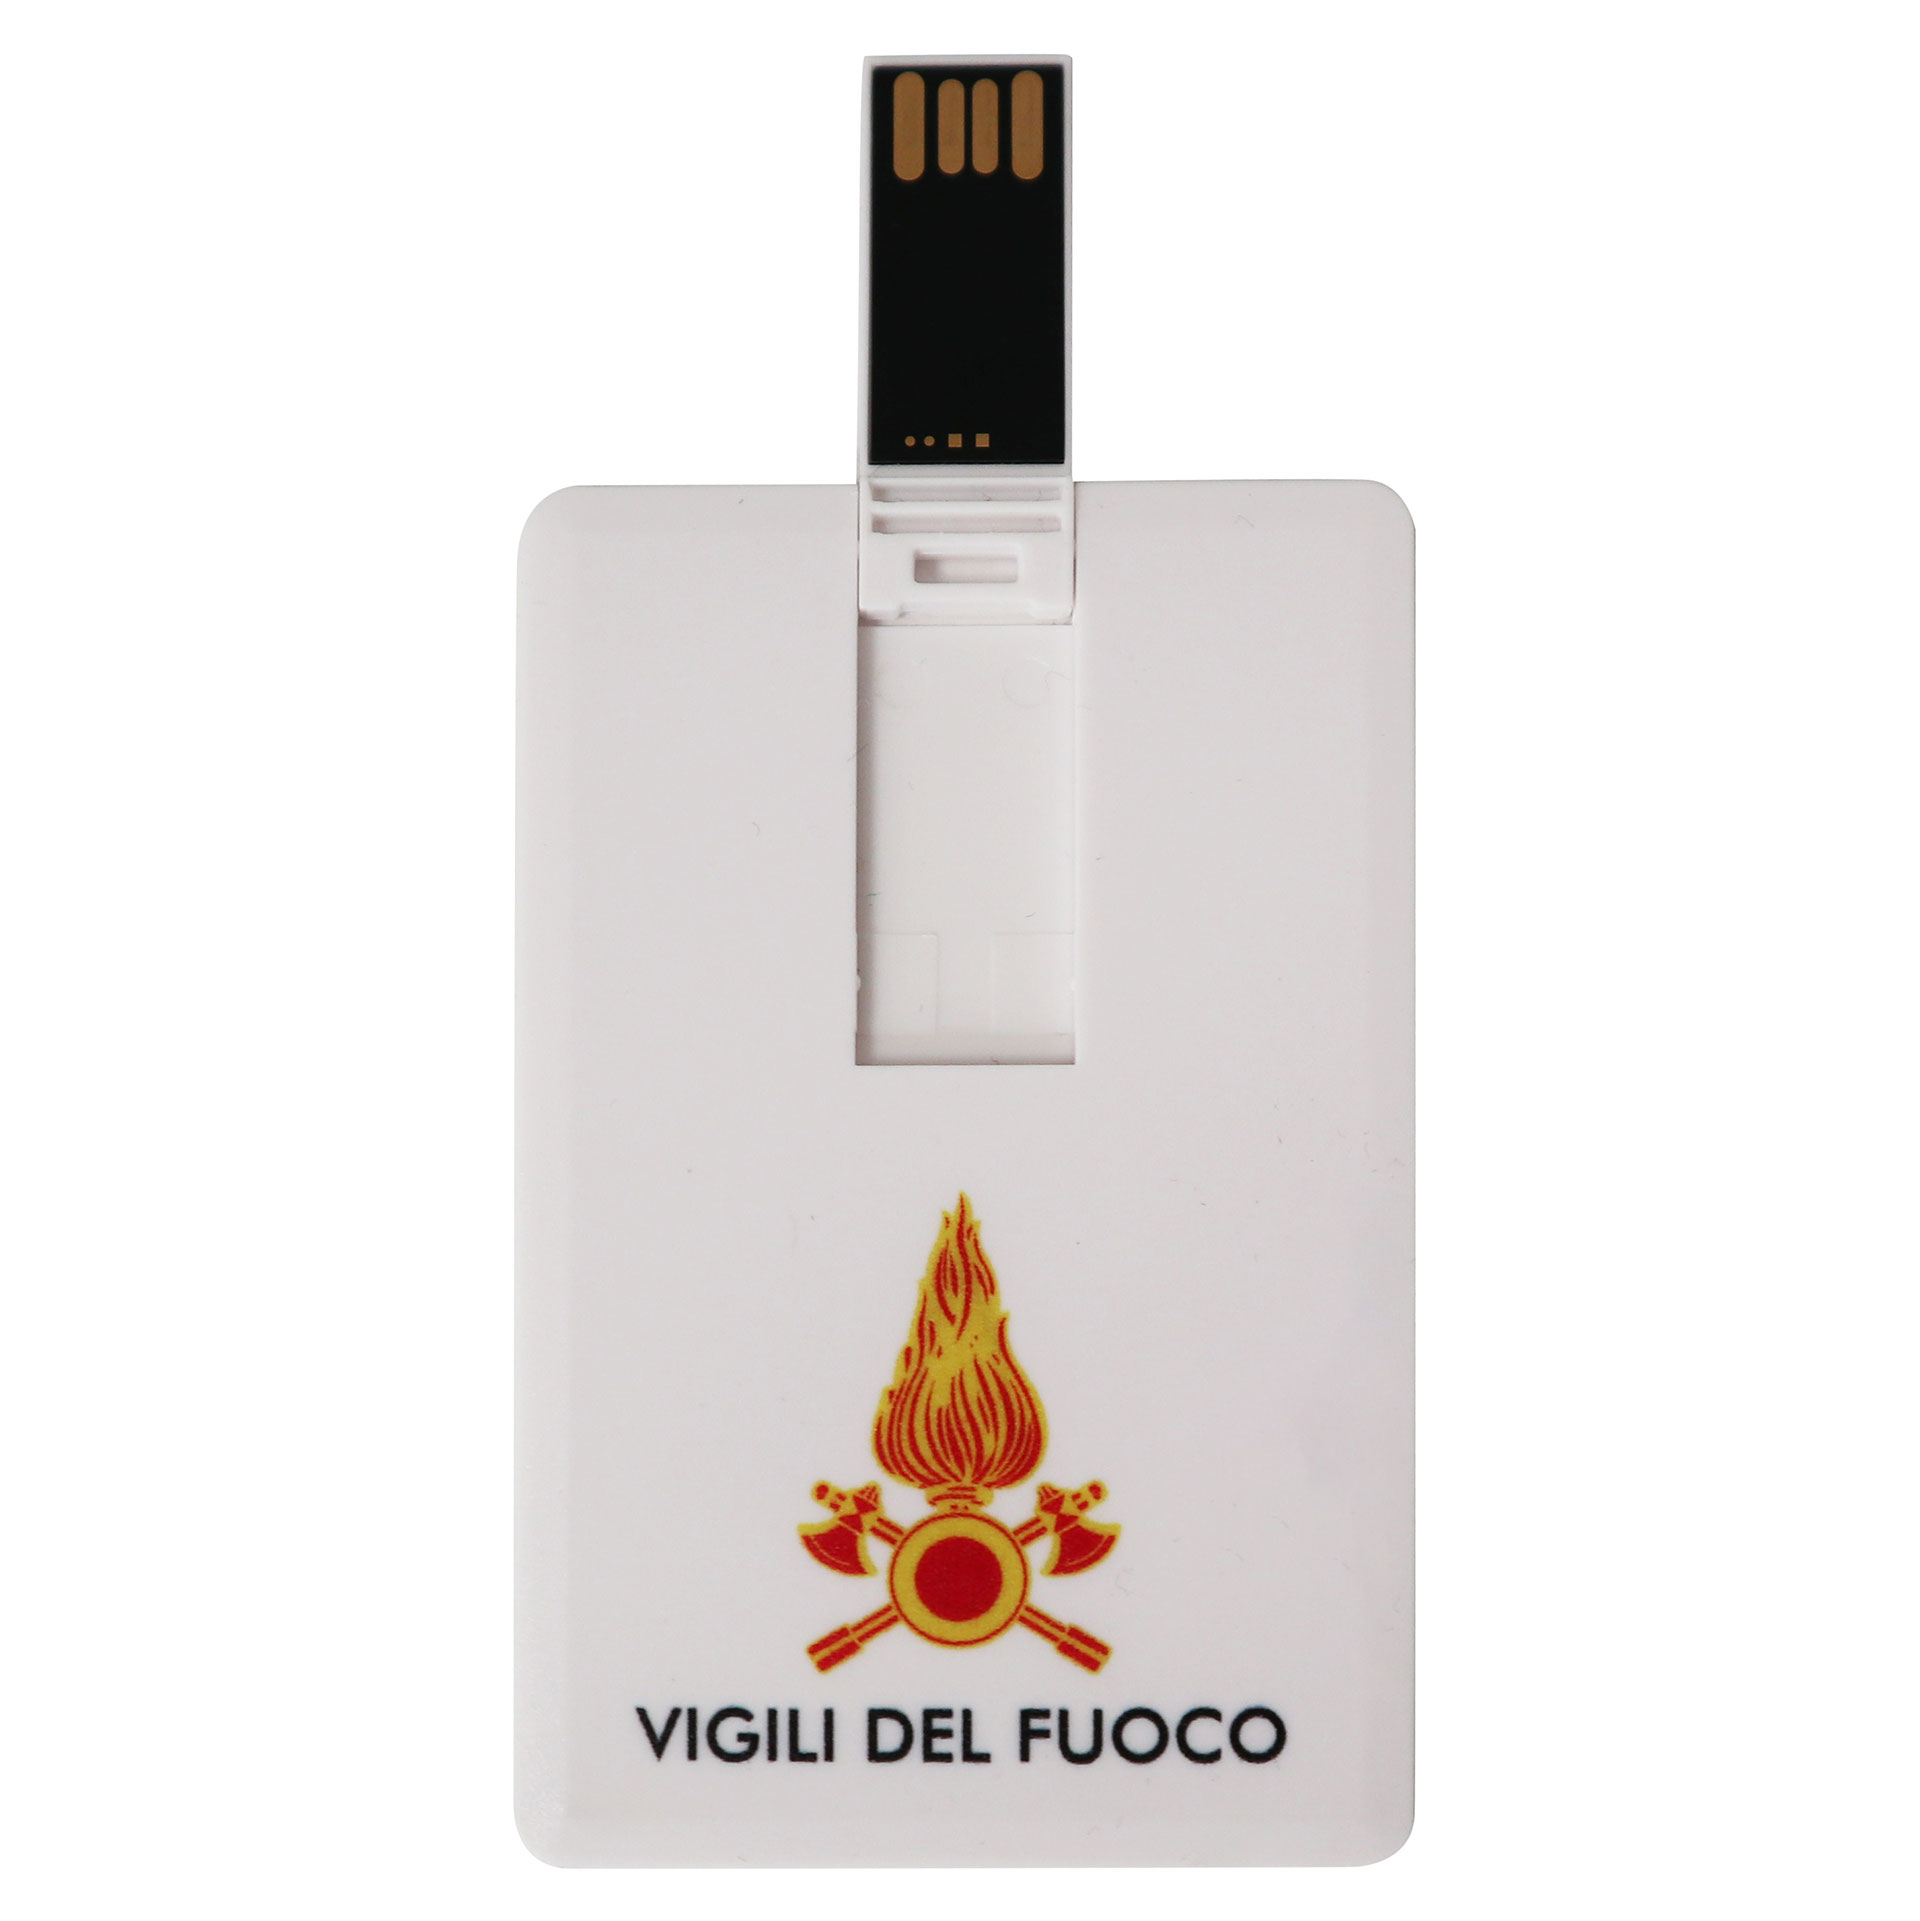 USB CARD 8 GB VIGILI DEL FUOCO DIMENSIONE 85X50 MM